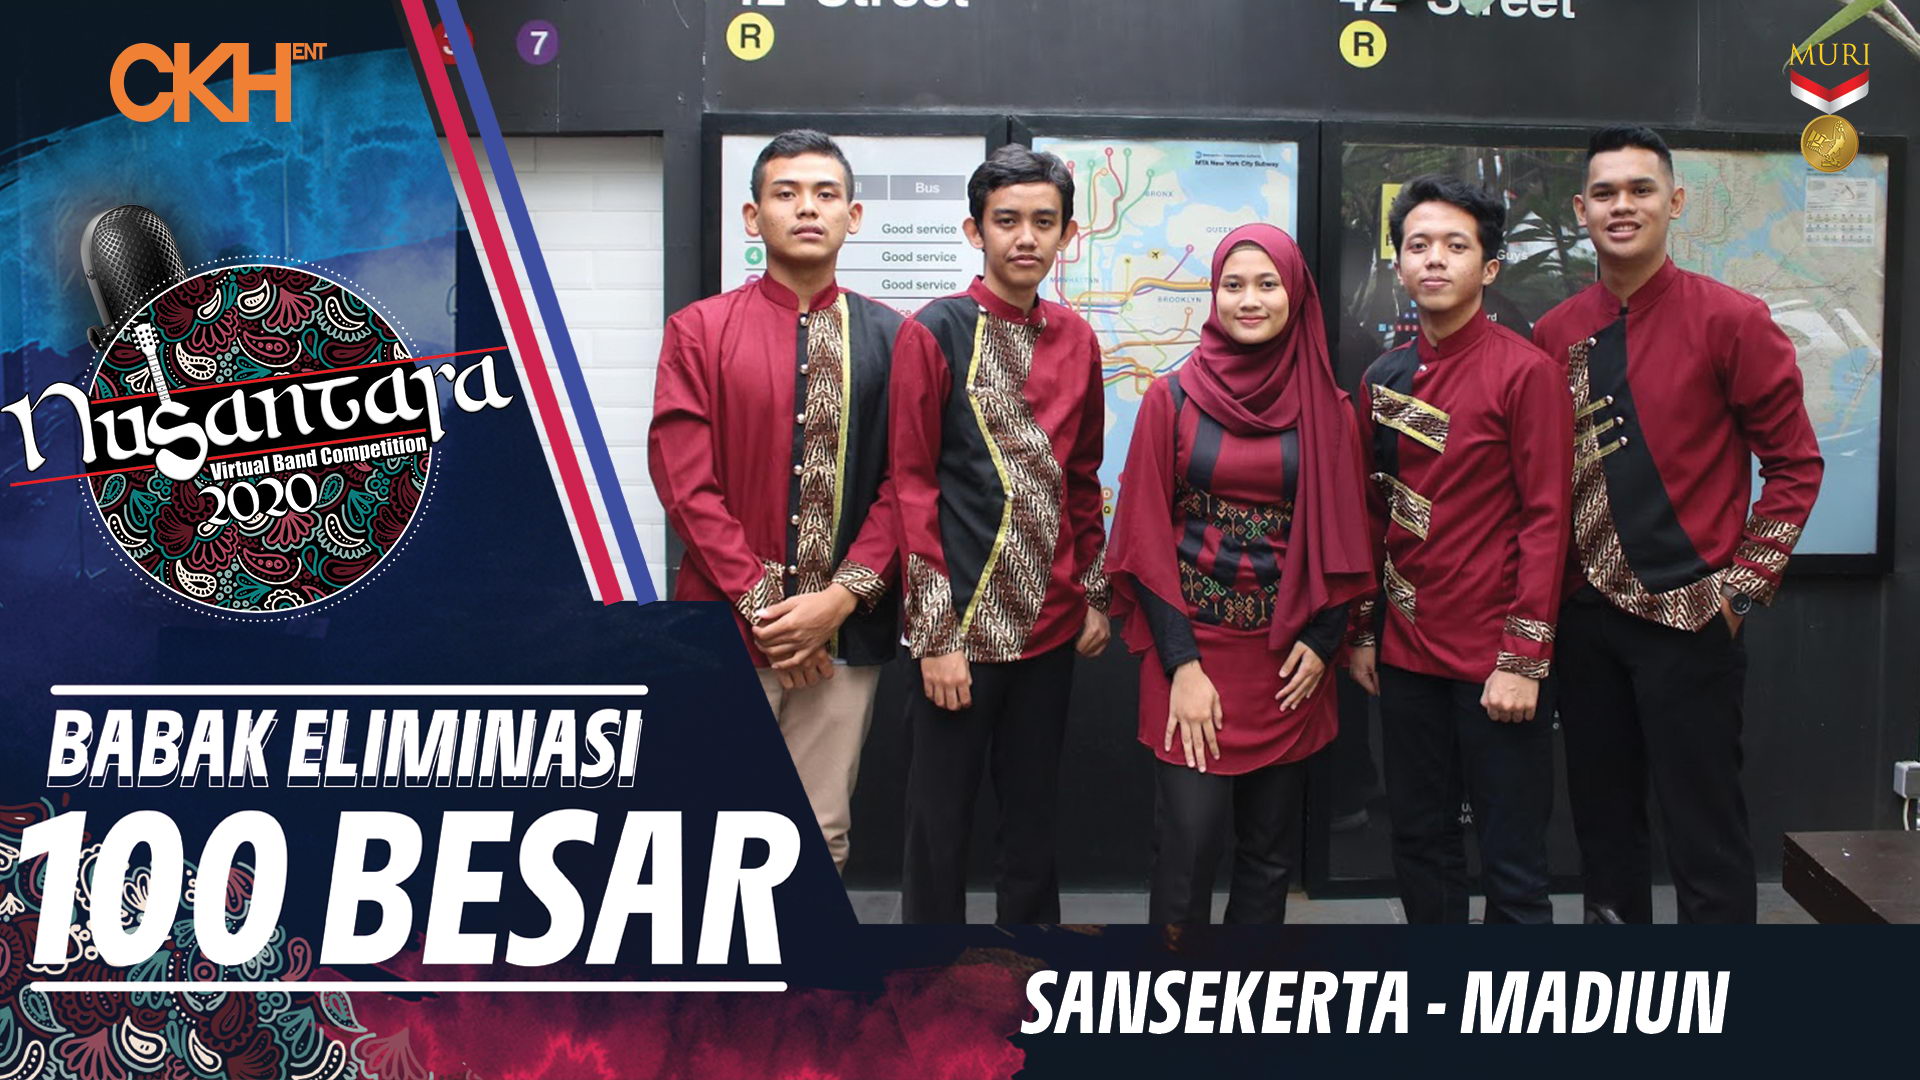 Sansekerta - Eliminasi 100 Besar Nusantara Virtual Band Competition